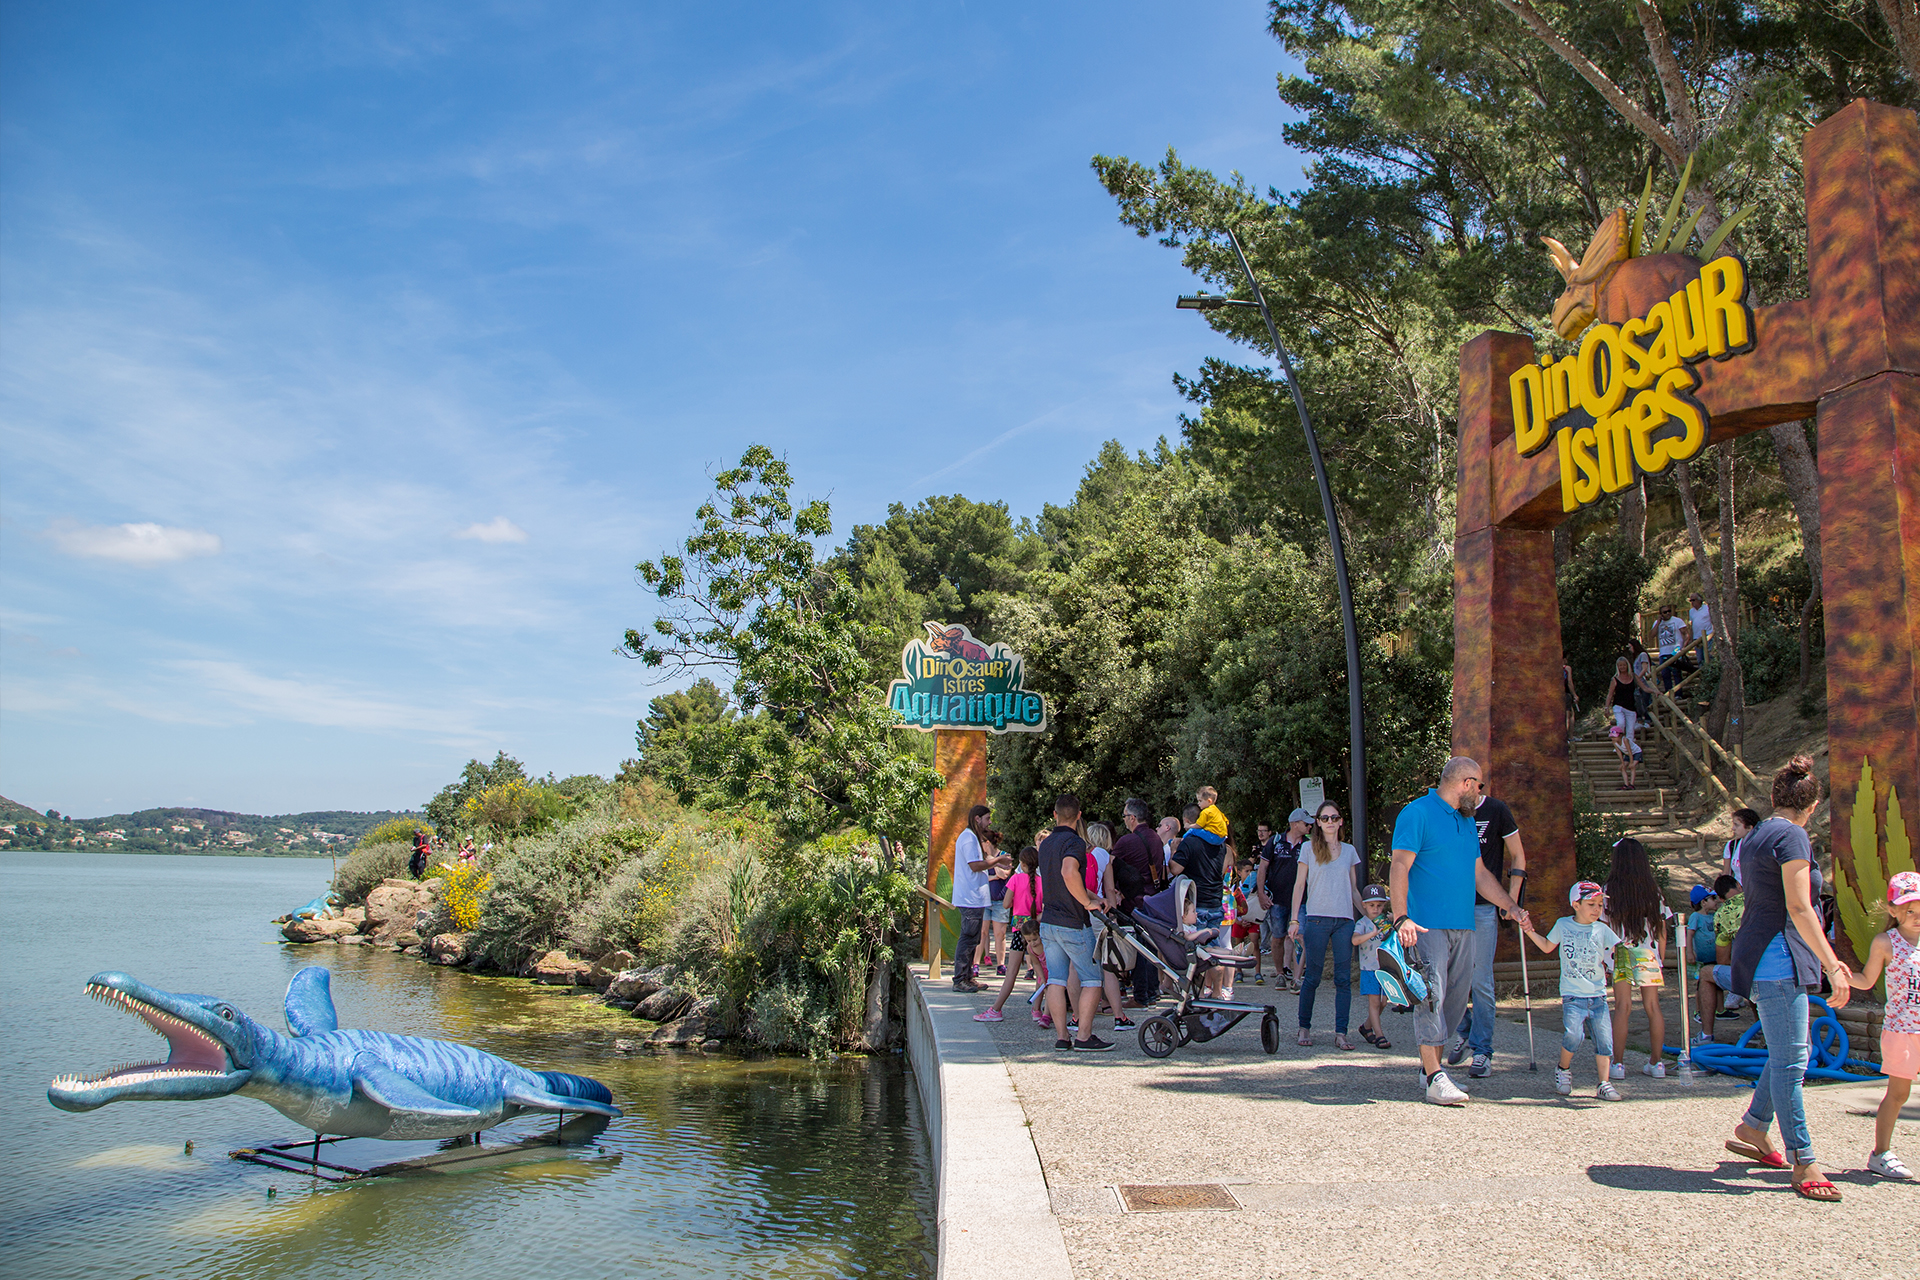 Bienvenue à Dinosaures, parc de dinosaures au bord de l'étang de l'Olivier - © Service communication ville d'Istres